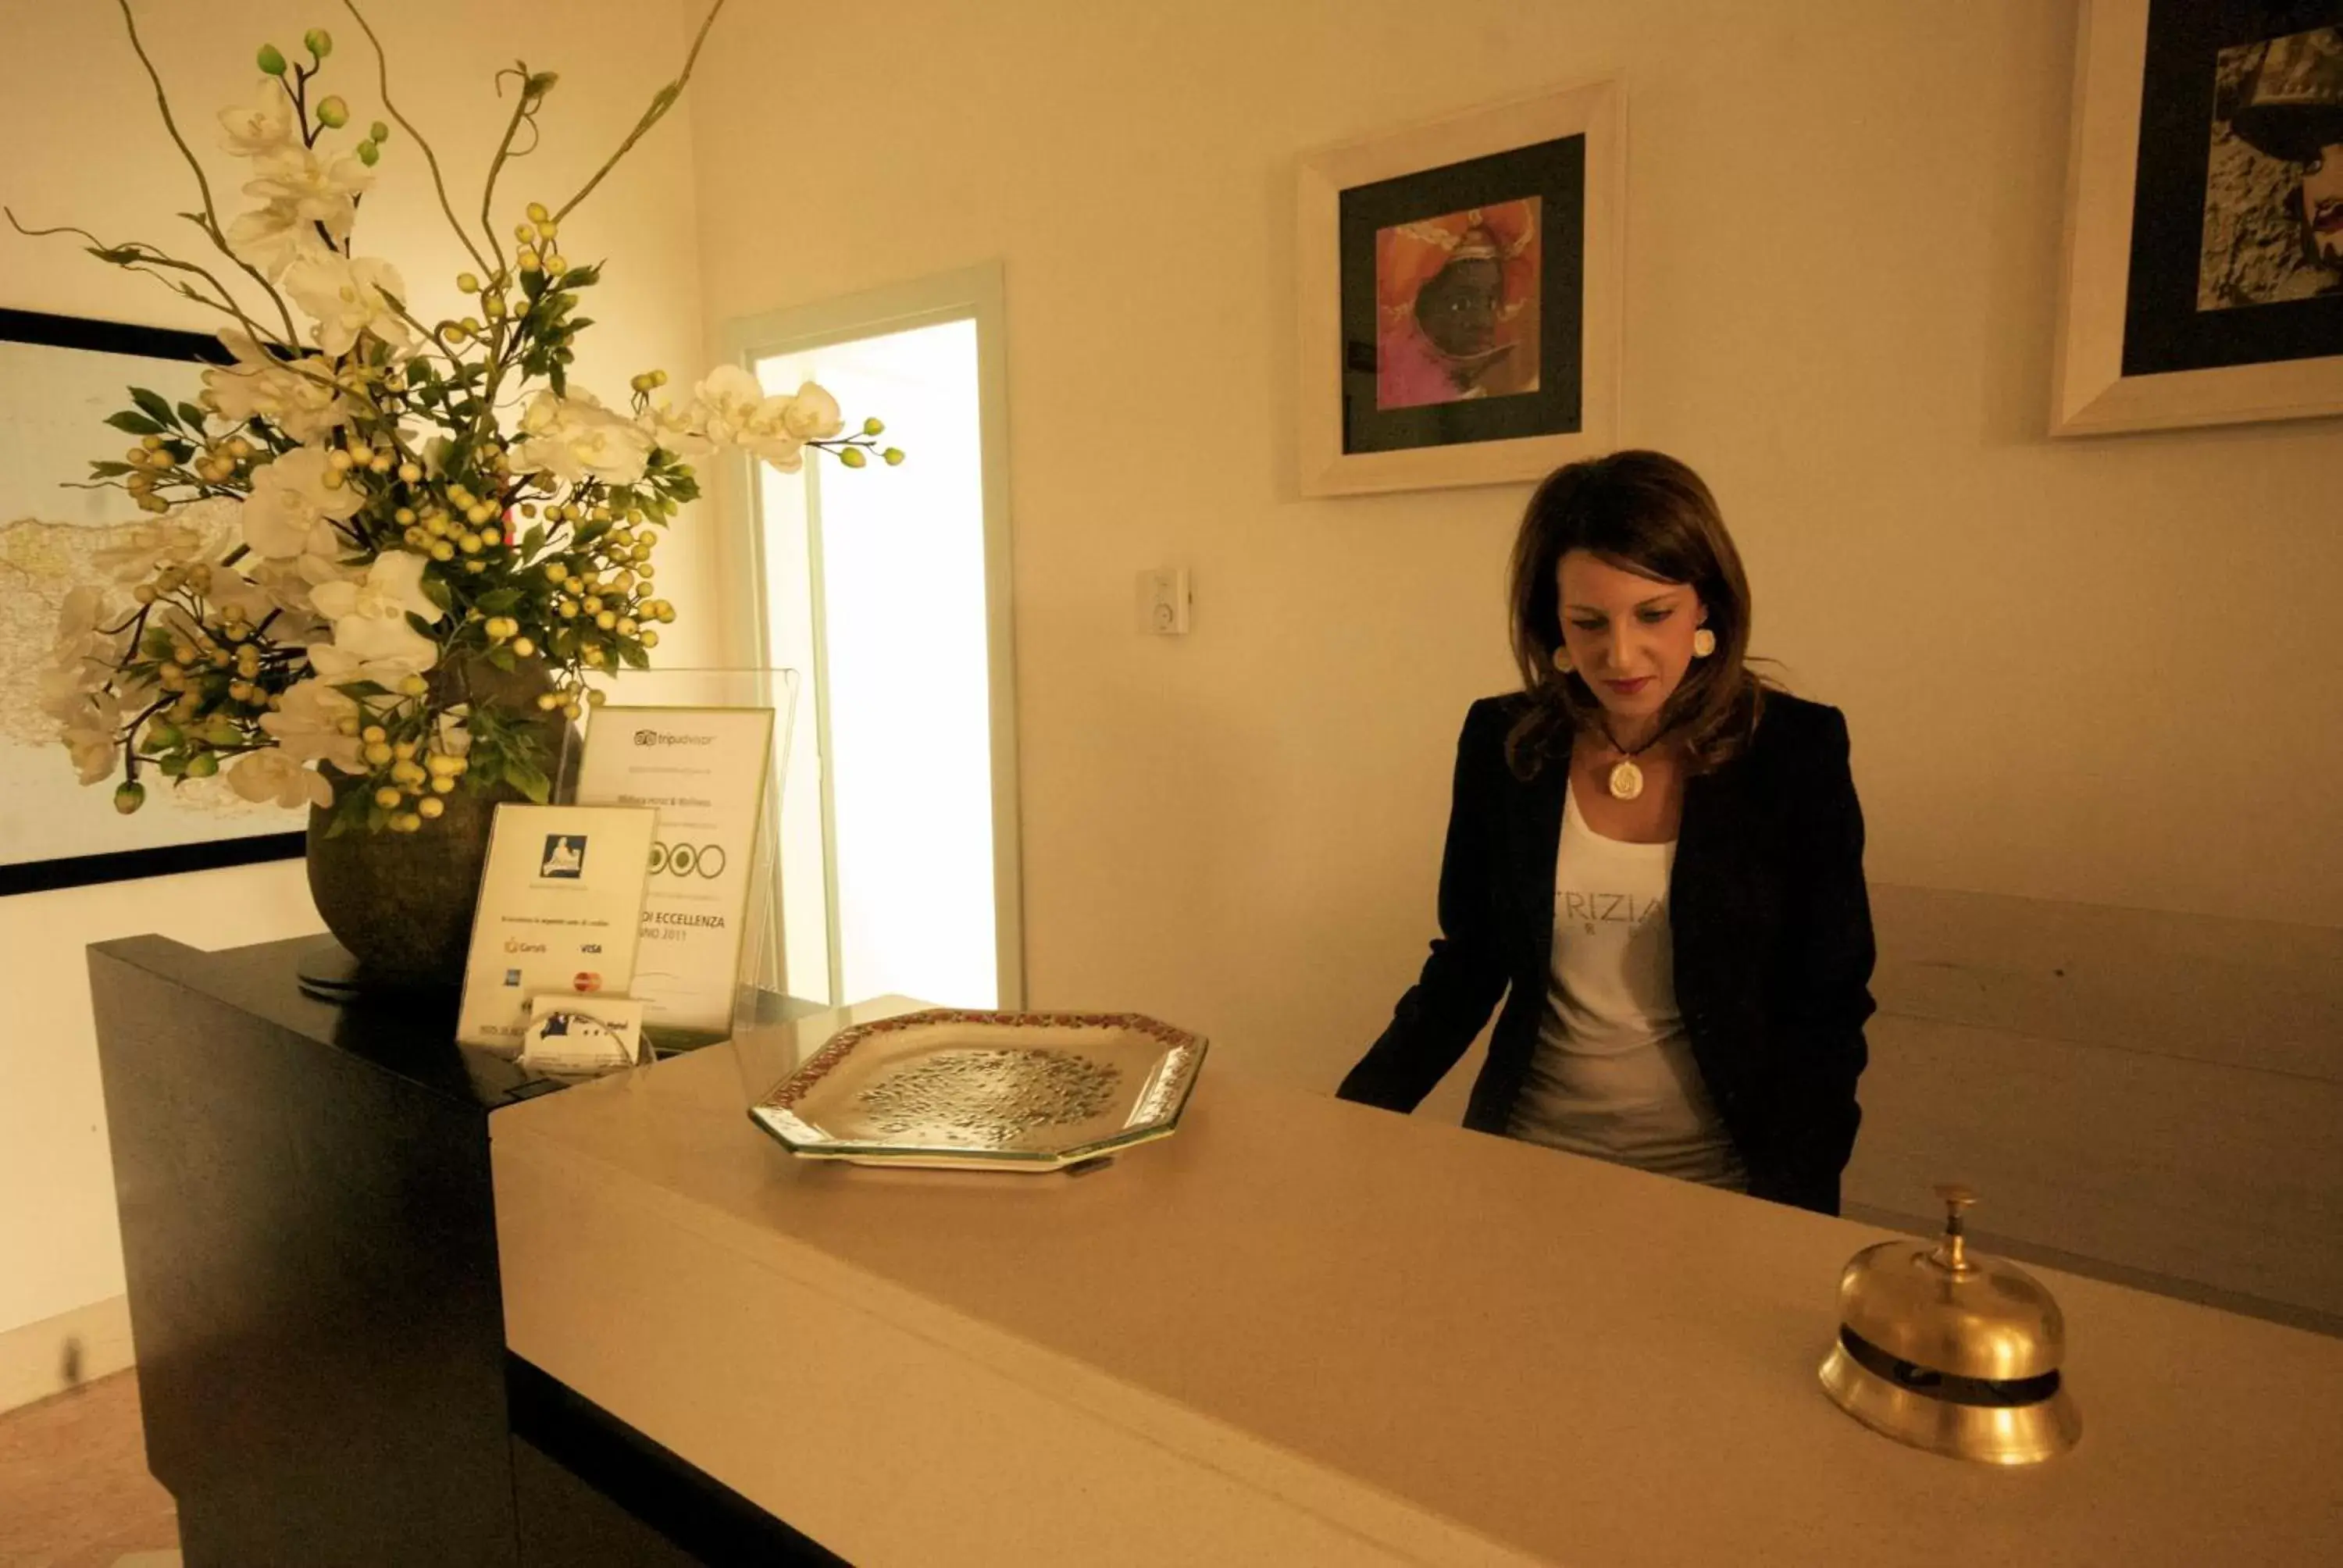 Lobby or reception in Mahara Hotel & Wellness